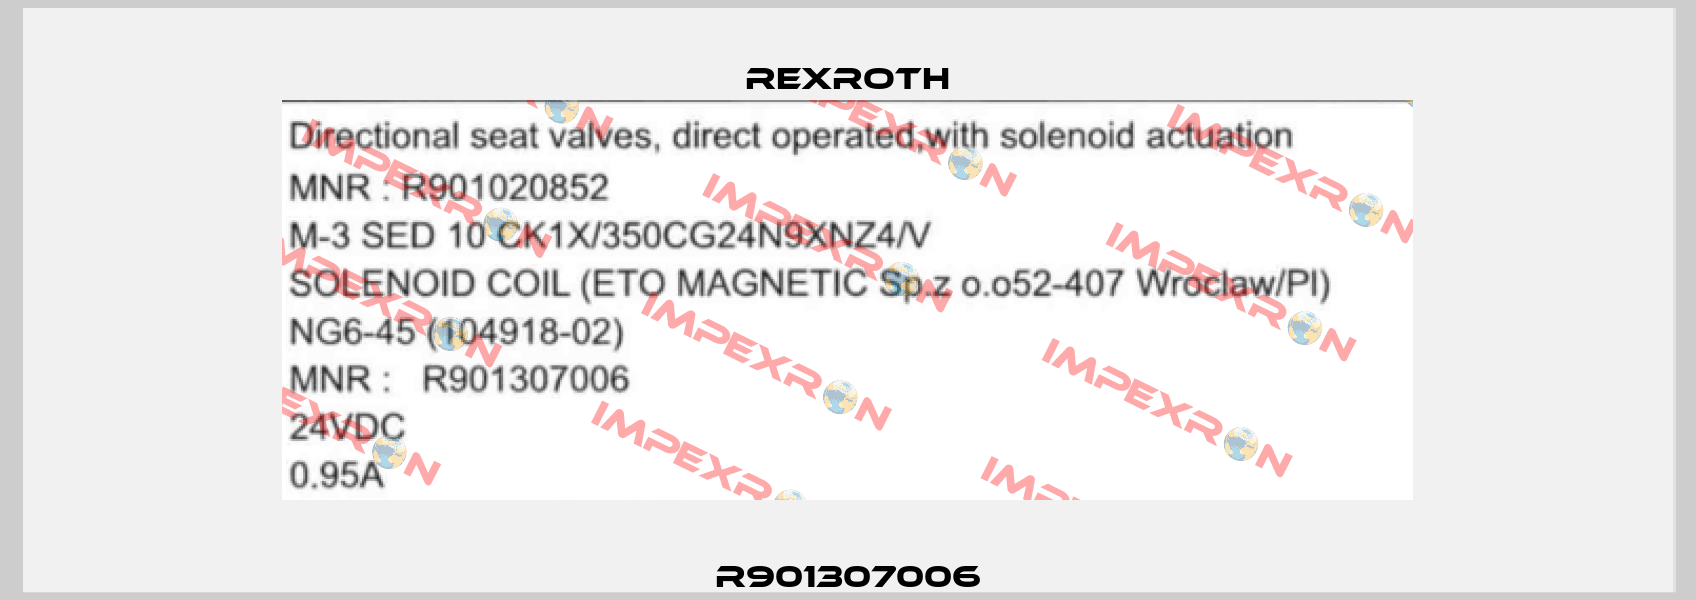 R901307006 Rexroth